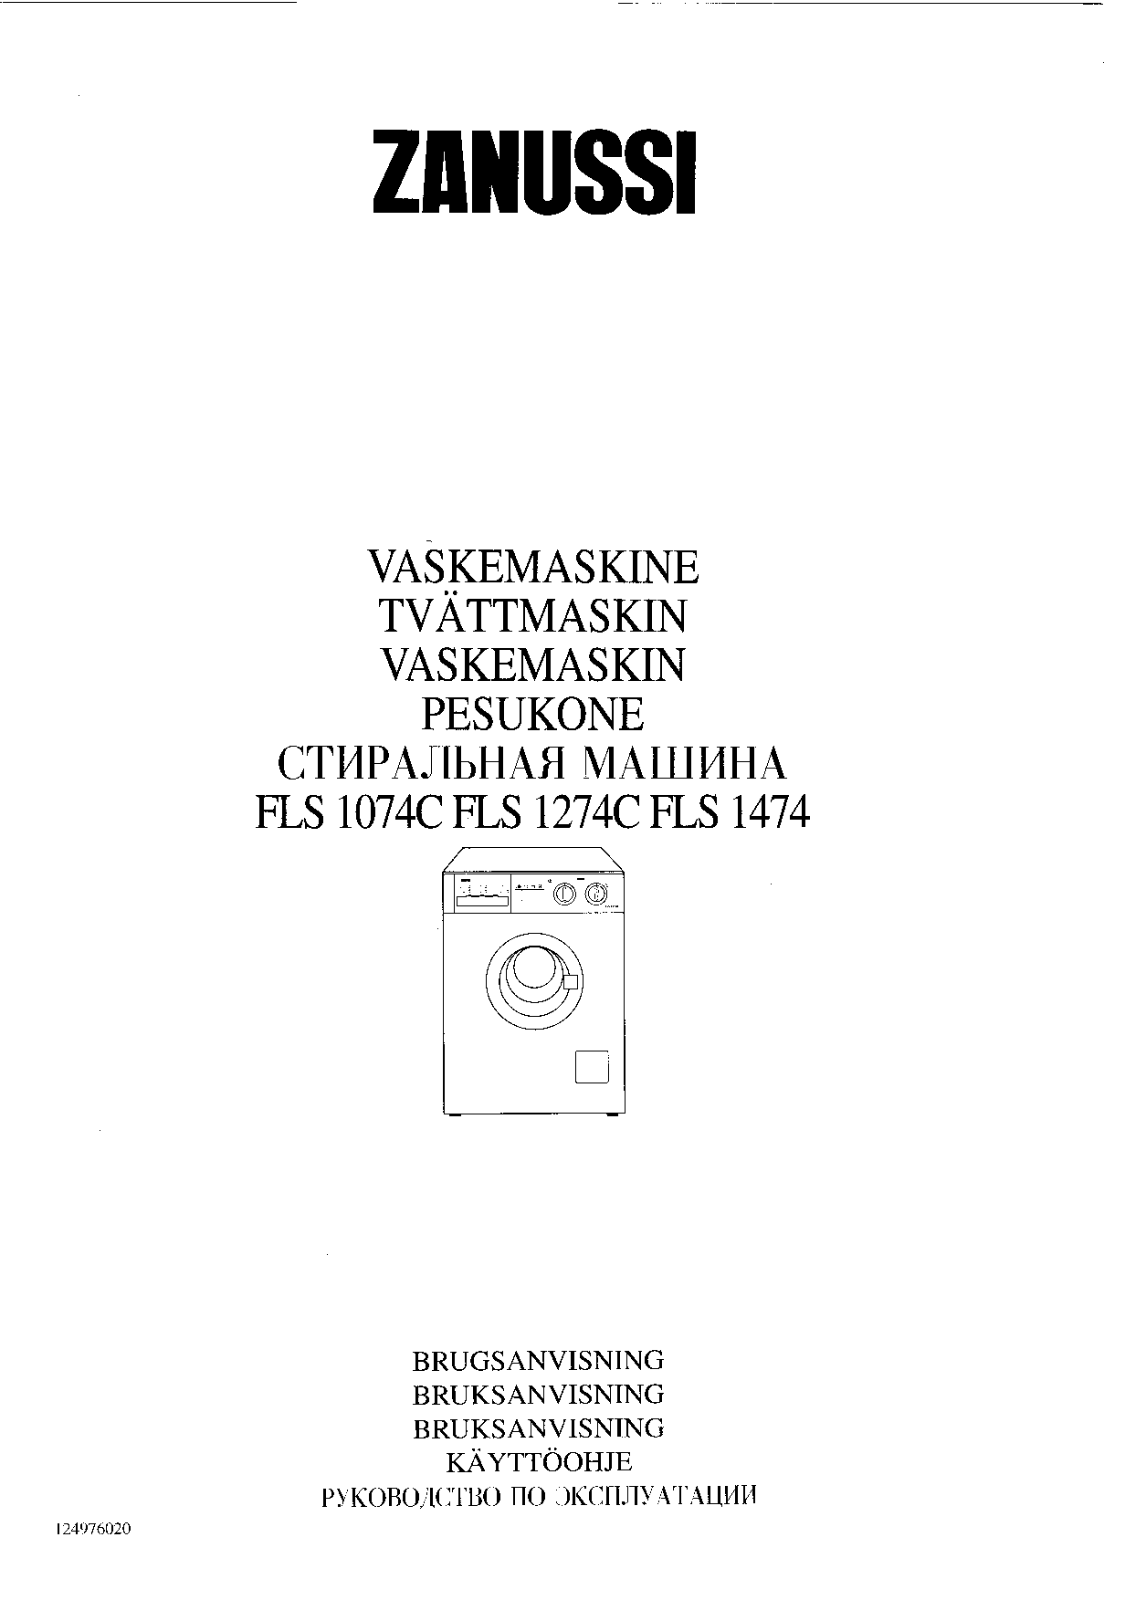 Zanussi FLS 1274C User Manual